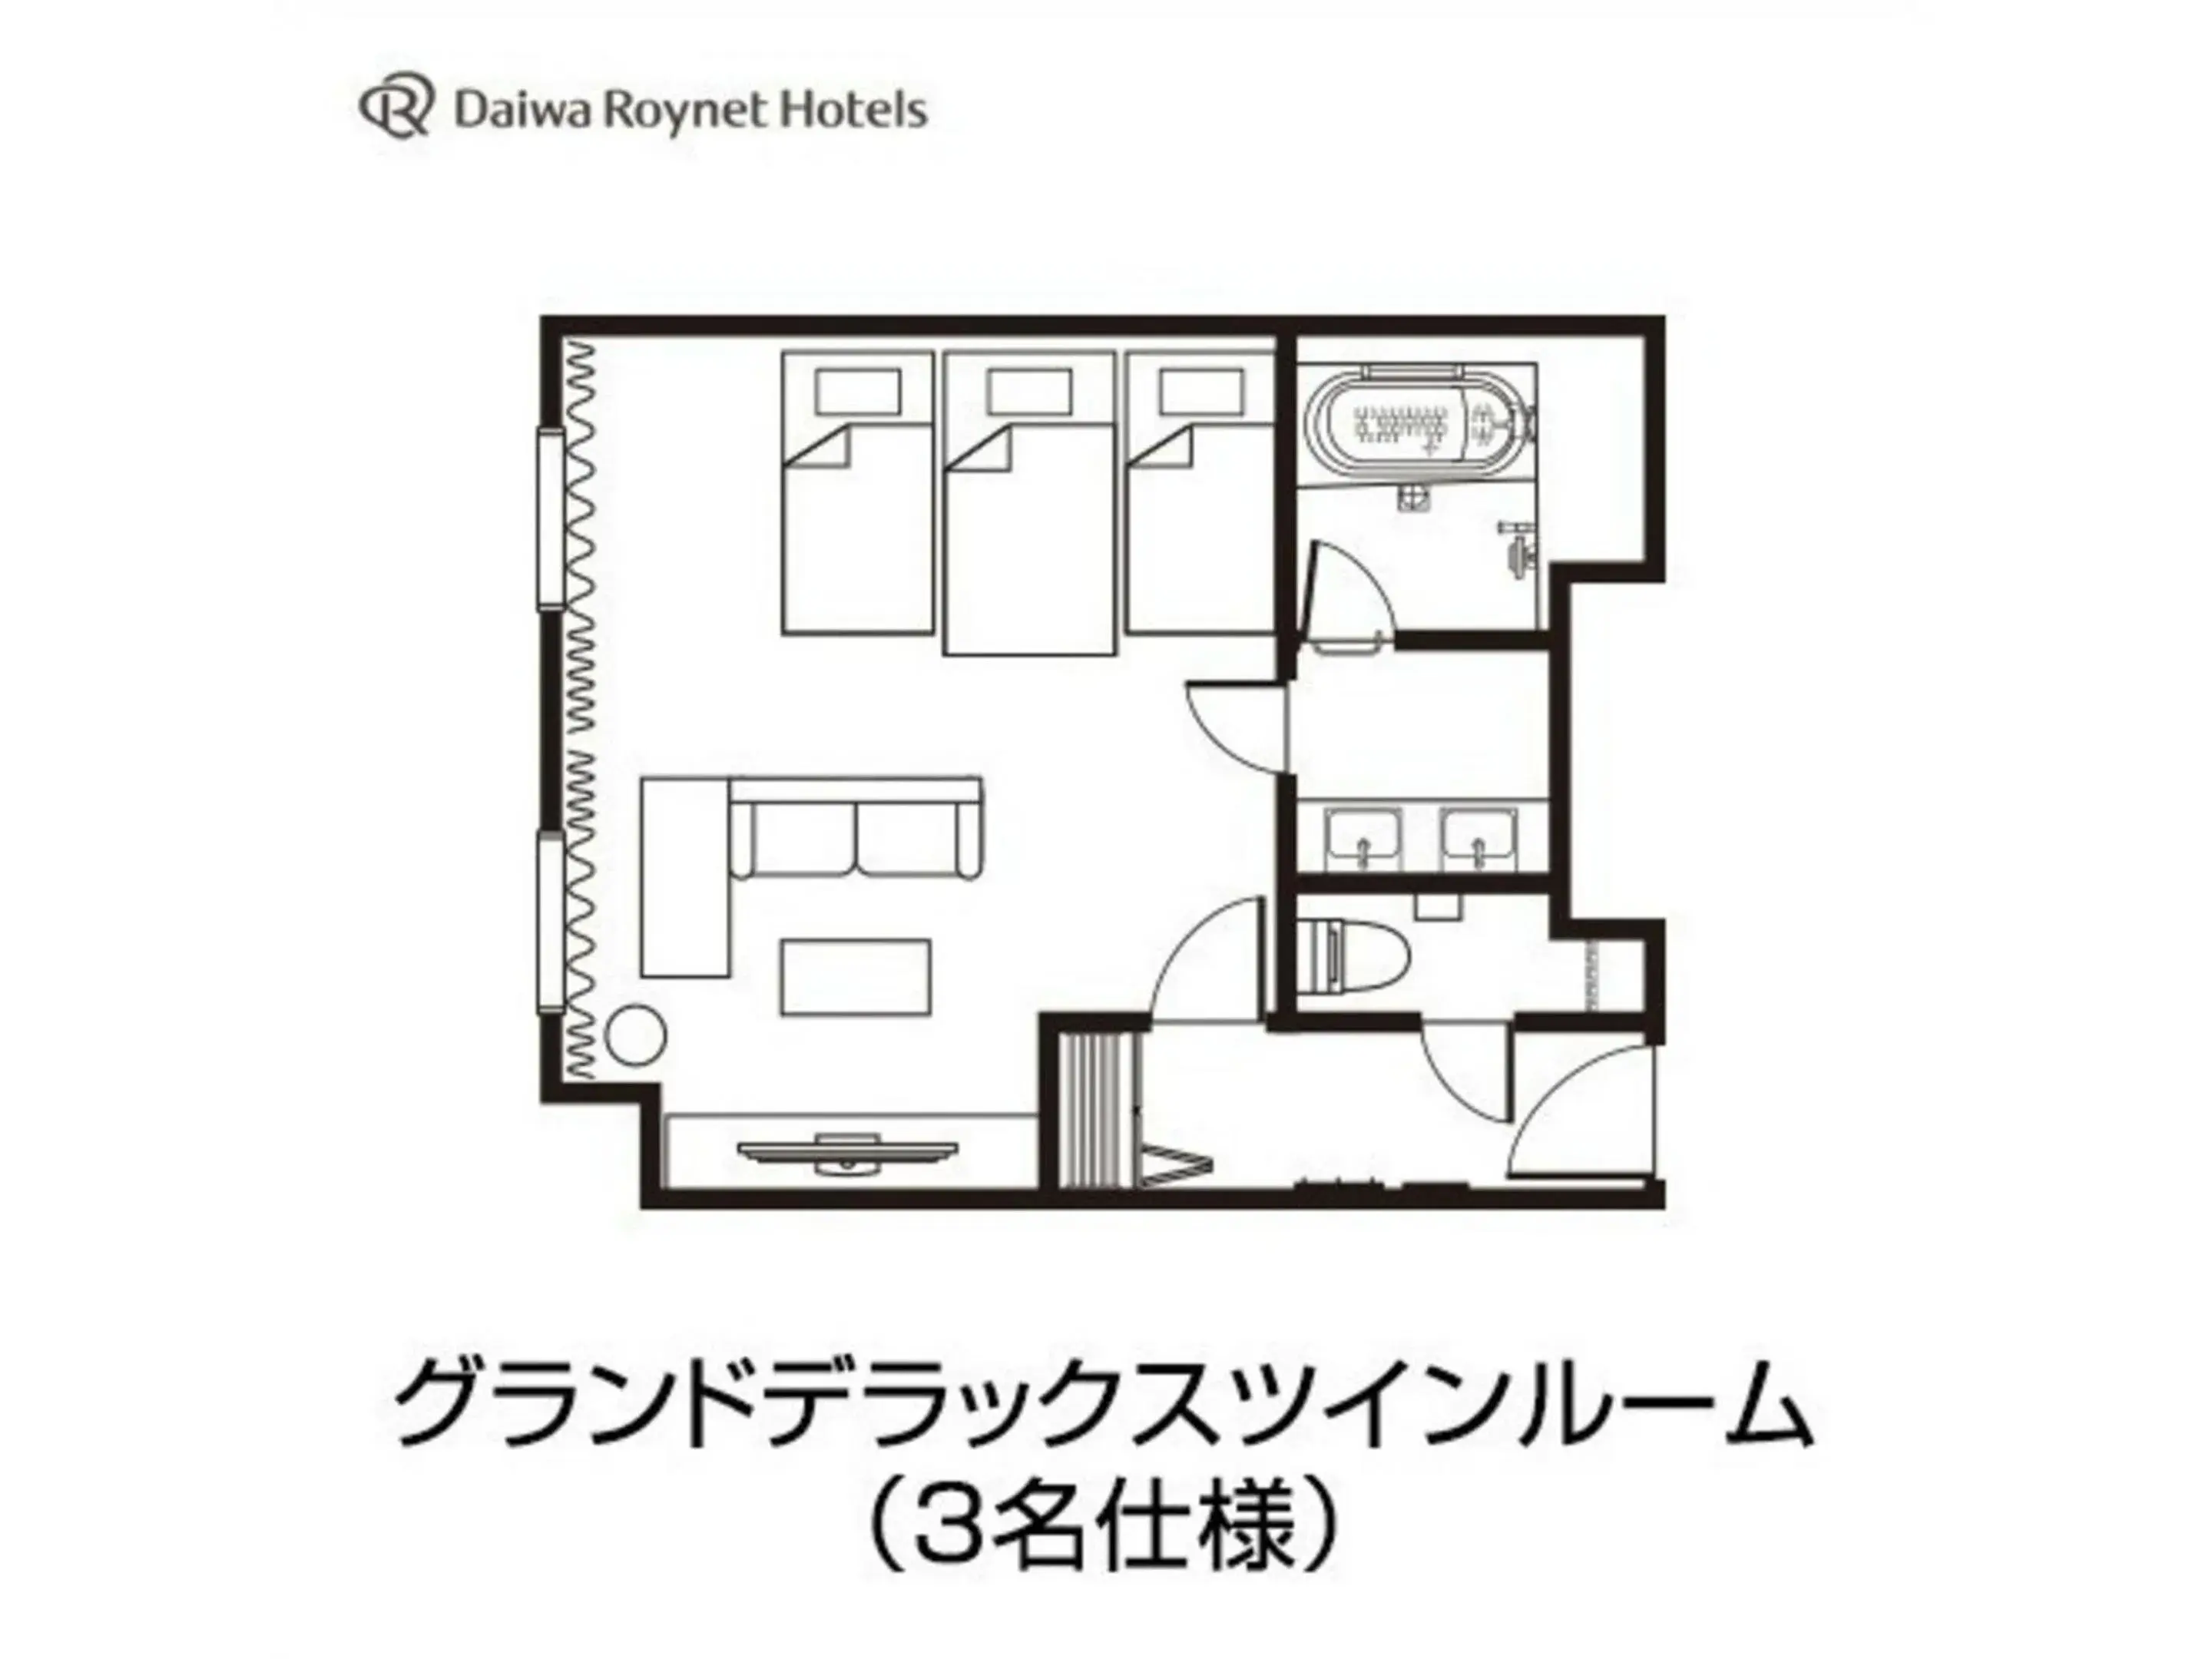 Floor Plan in Daiwa Roynet Hotel Aomori